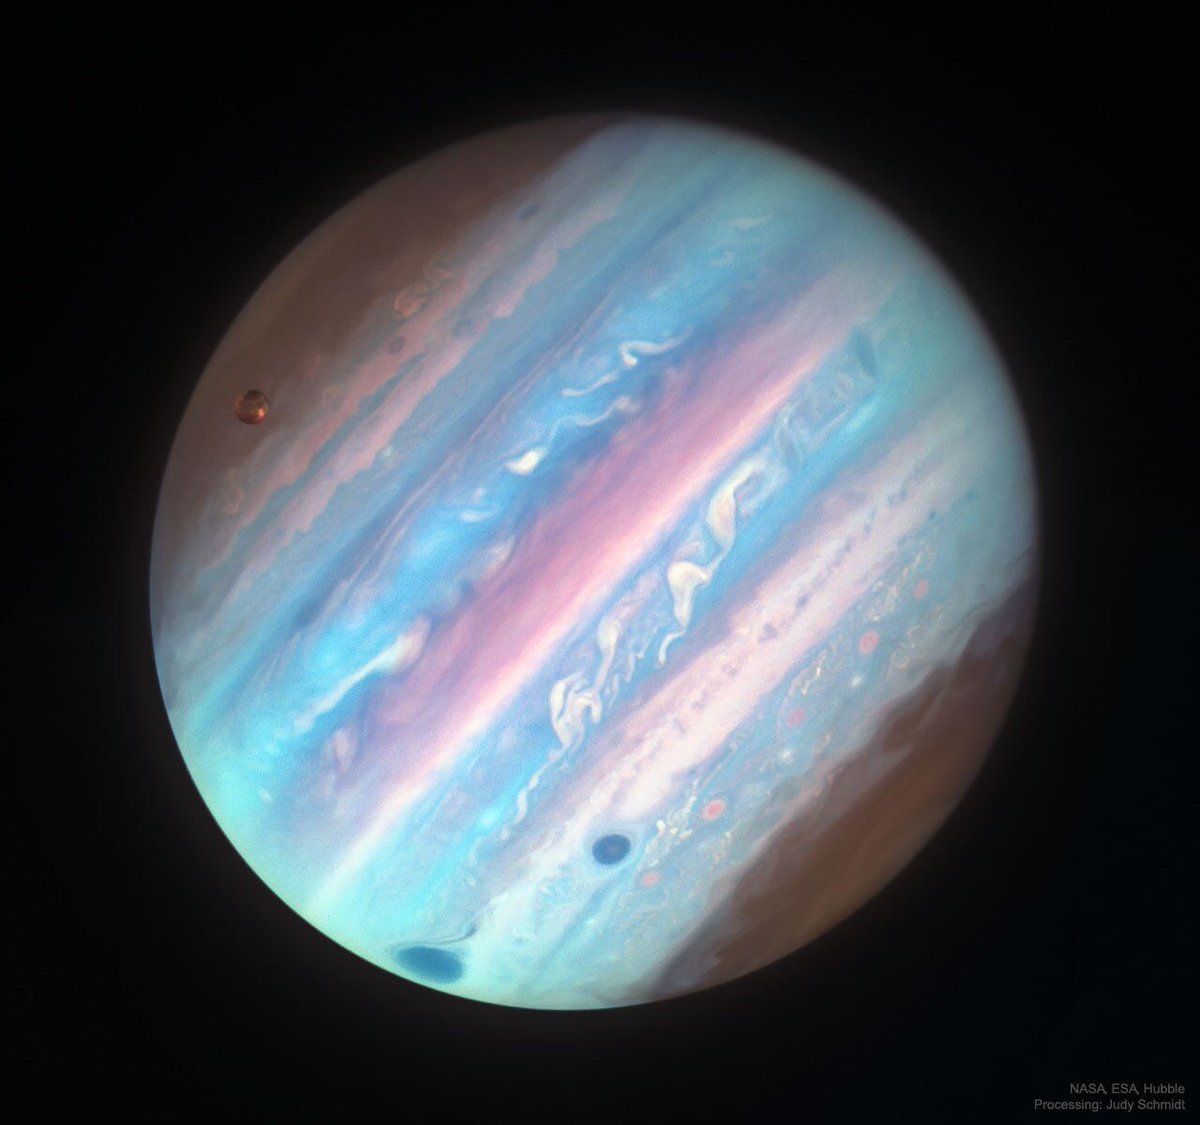 Jupiter shot in UV light from Hubble. 

(📷 processing: Judy Schmidt)